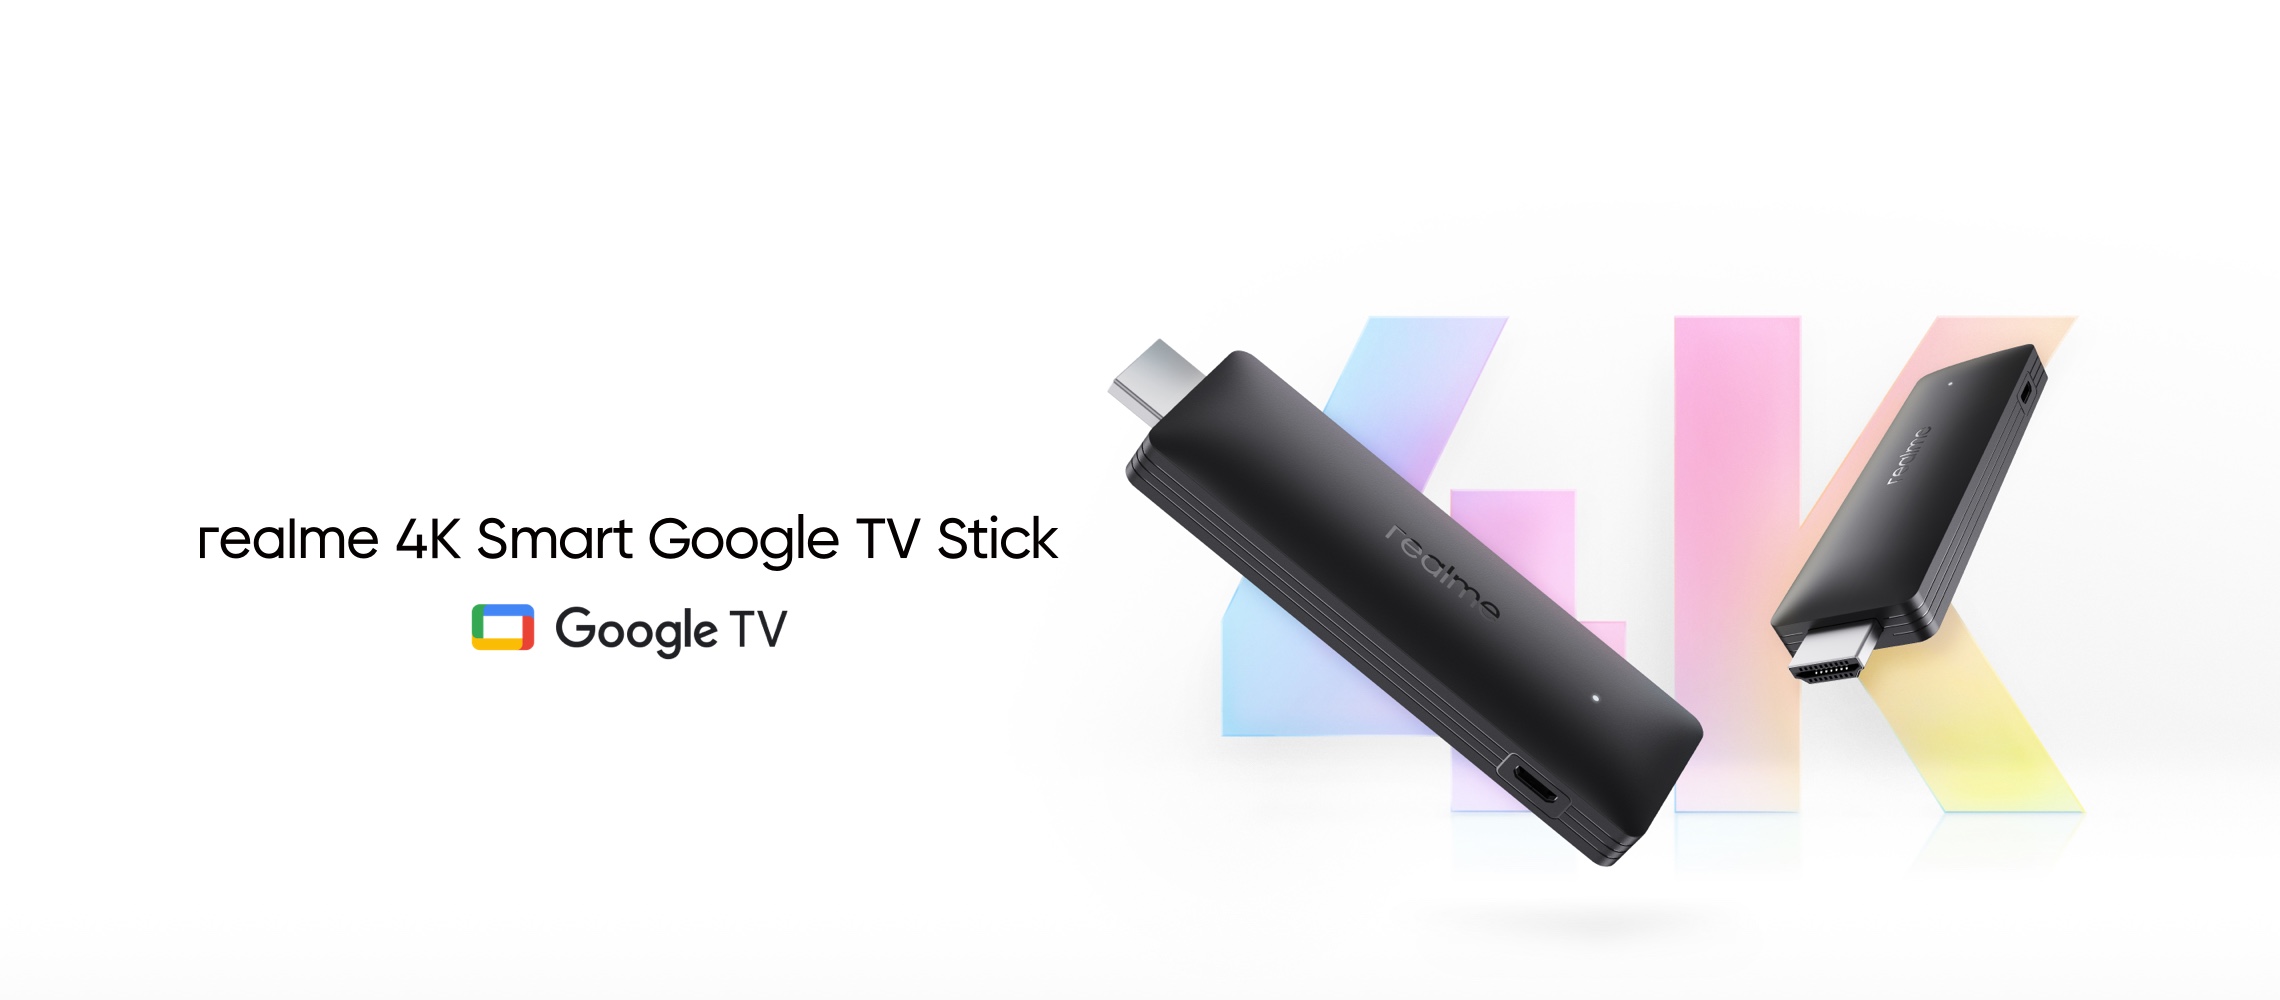 Realme 4K Smart Google TV Stick : décodeur de type stick avec 2 Go de RAM, puce quad-core et Google TV à bord pour 53 $